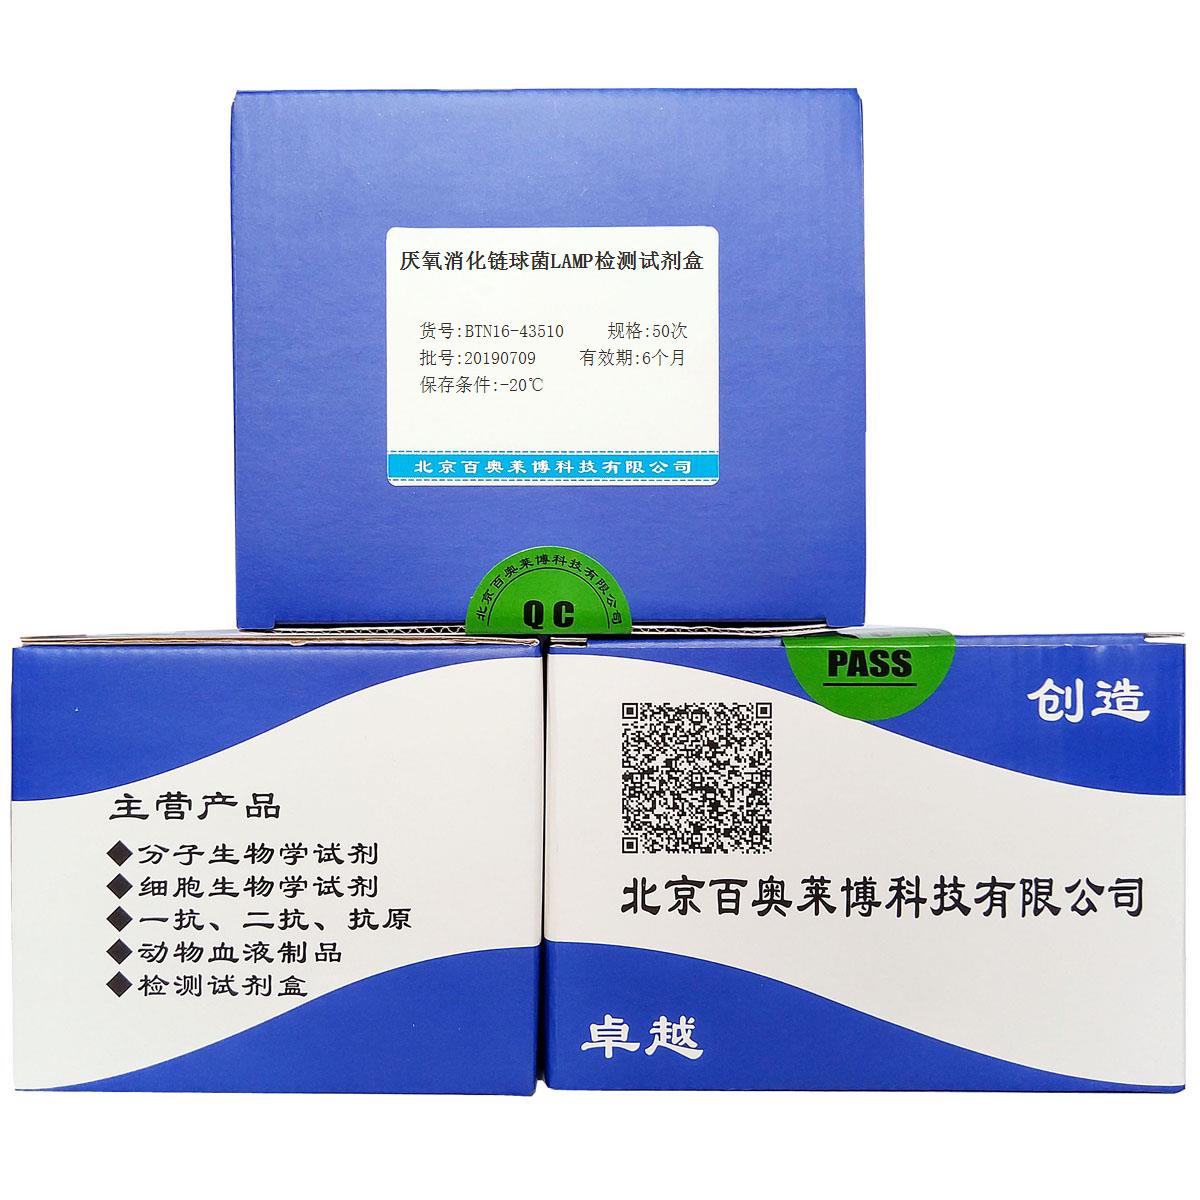 厌氧消化链球菌LAMP检测试剂盒北京供应商